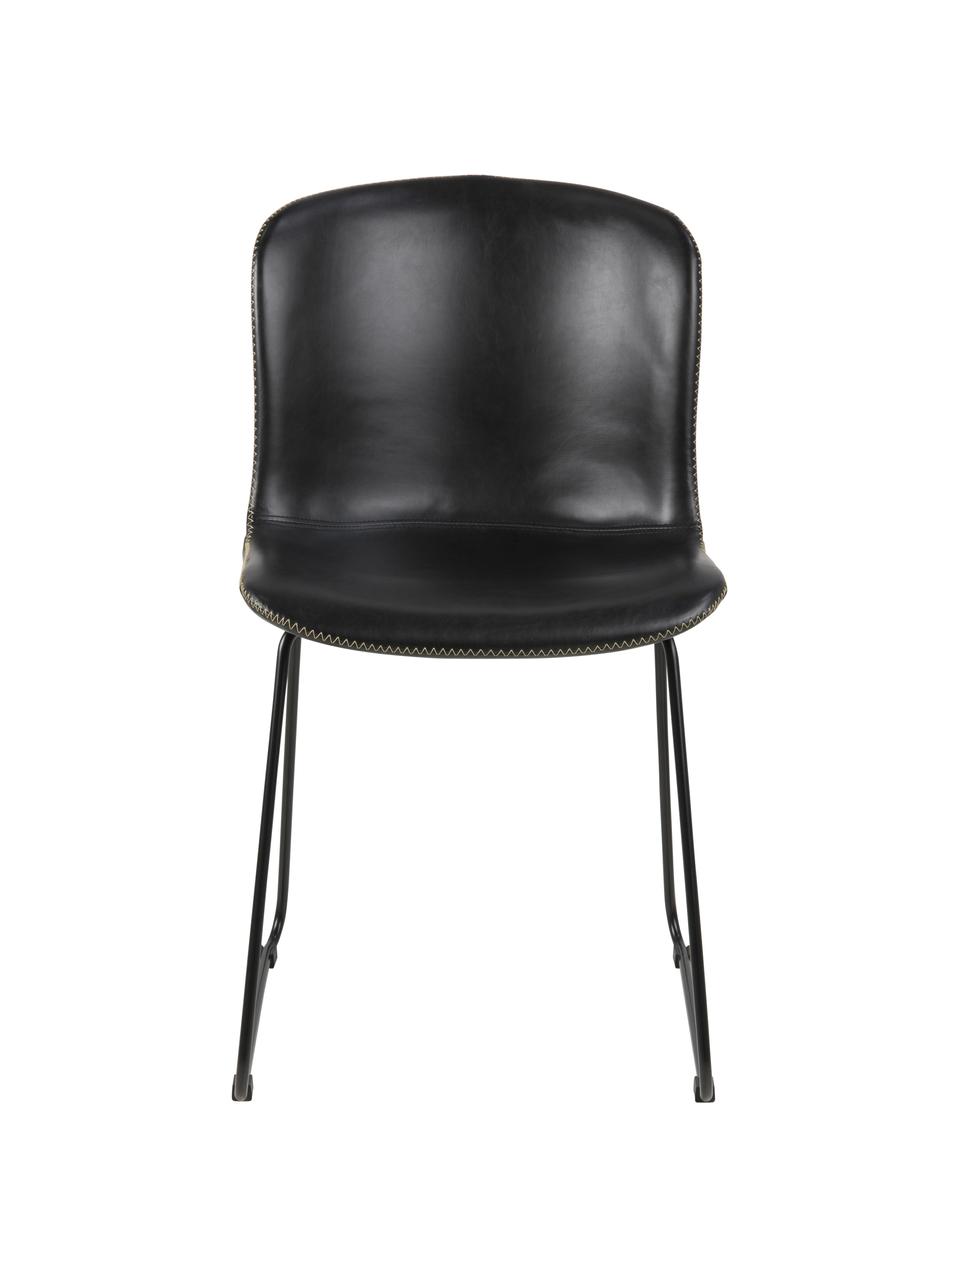 Krzesło tapicerowane ze sztucznej skóry Story, 2 szt., Tapicerka: sztuczna skóra, Nogi: metal malowany proszkowo, Czarny, S 47 x G 51 cm